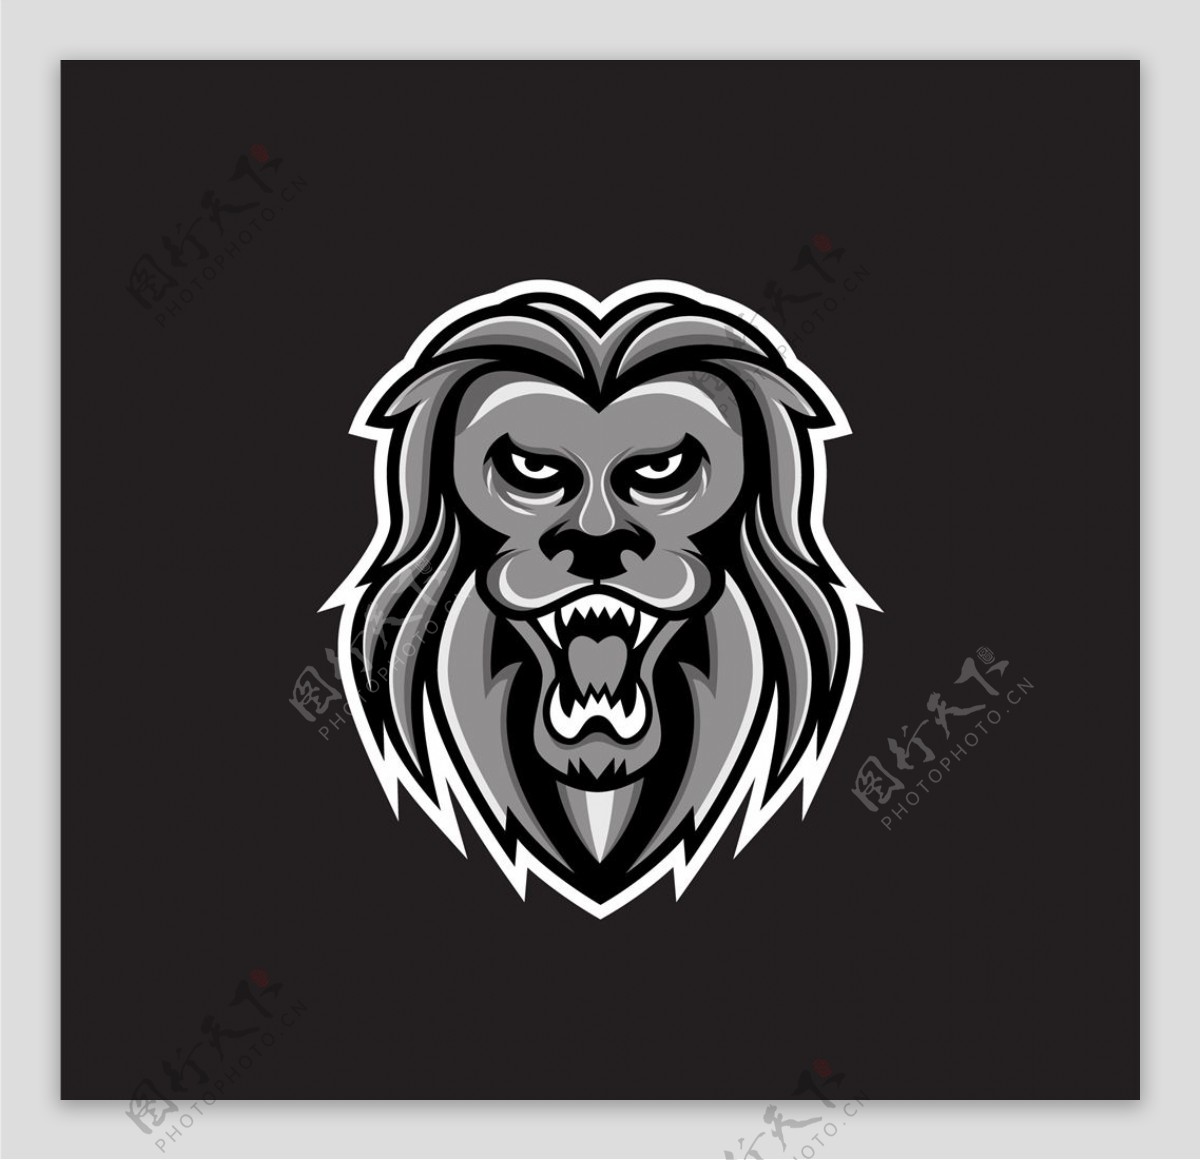 狮子标志